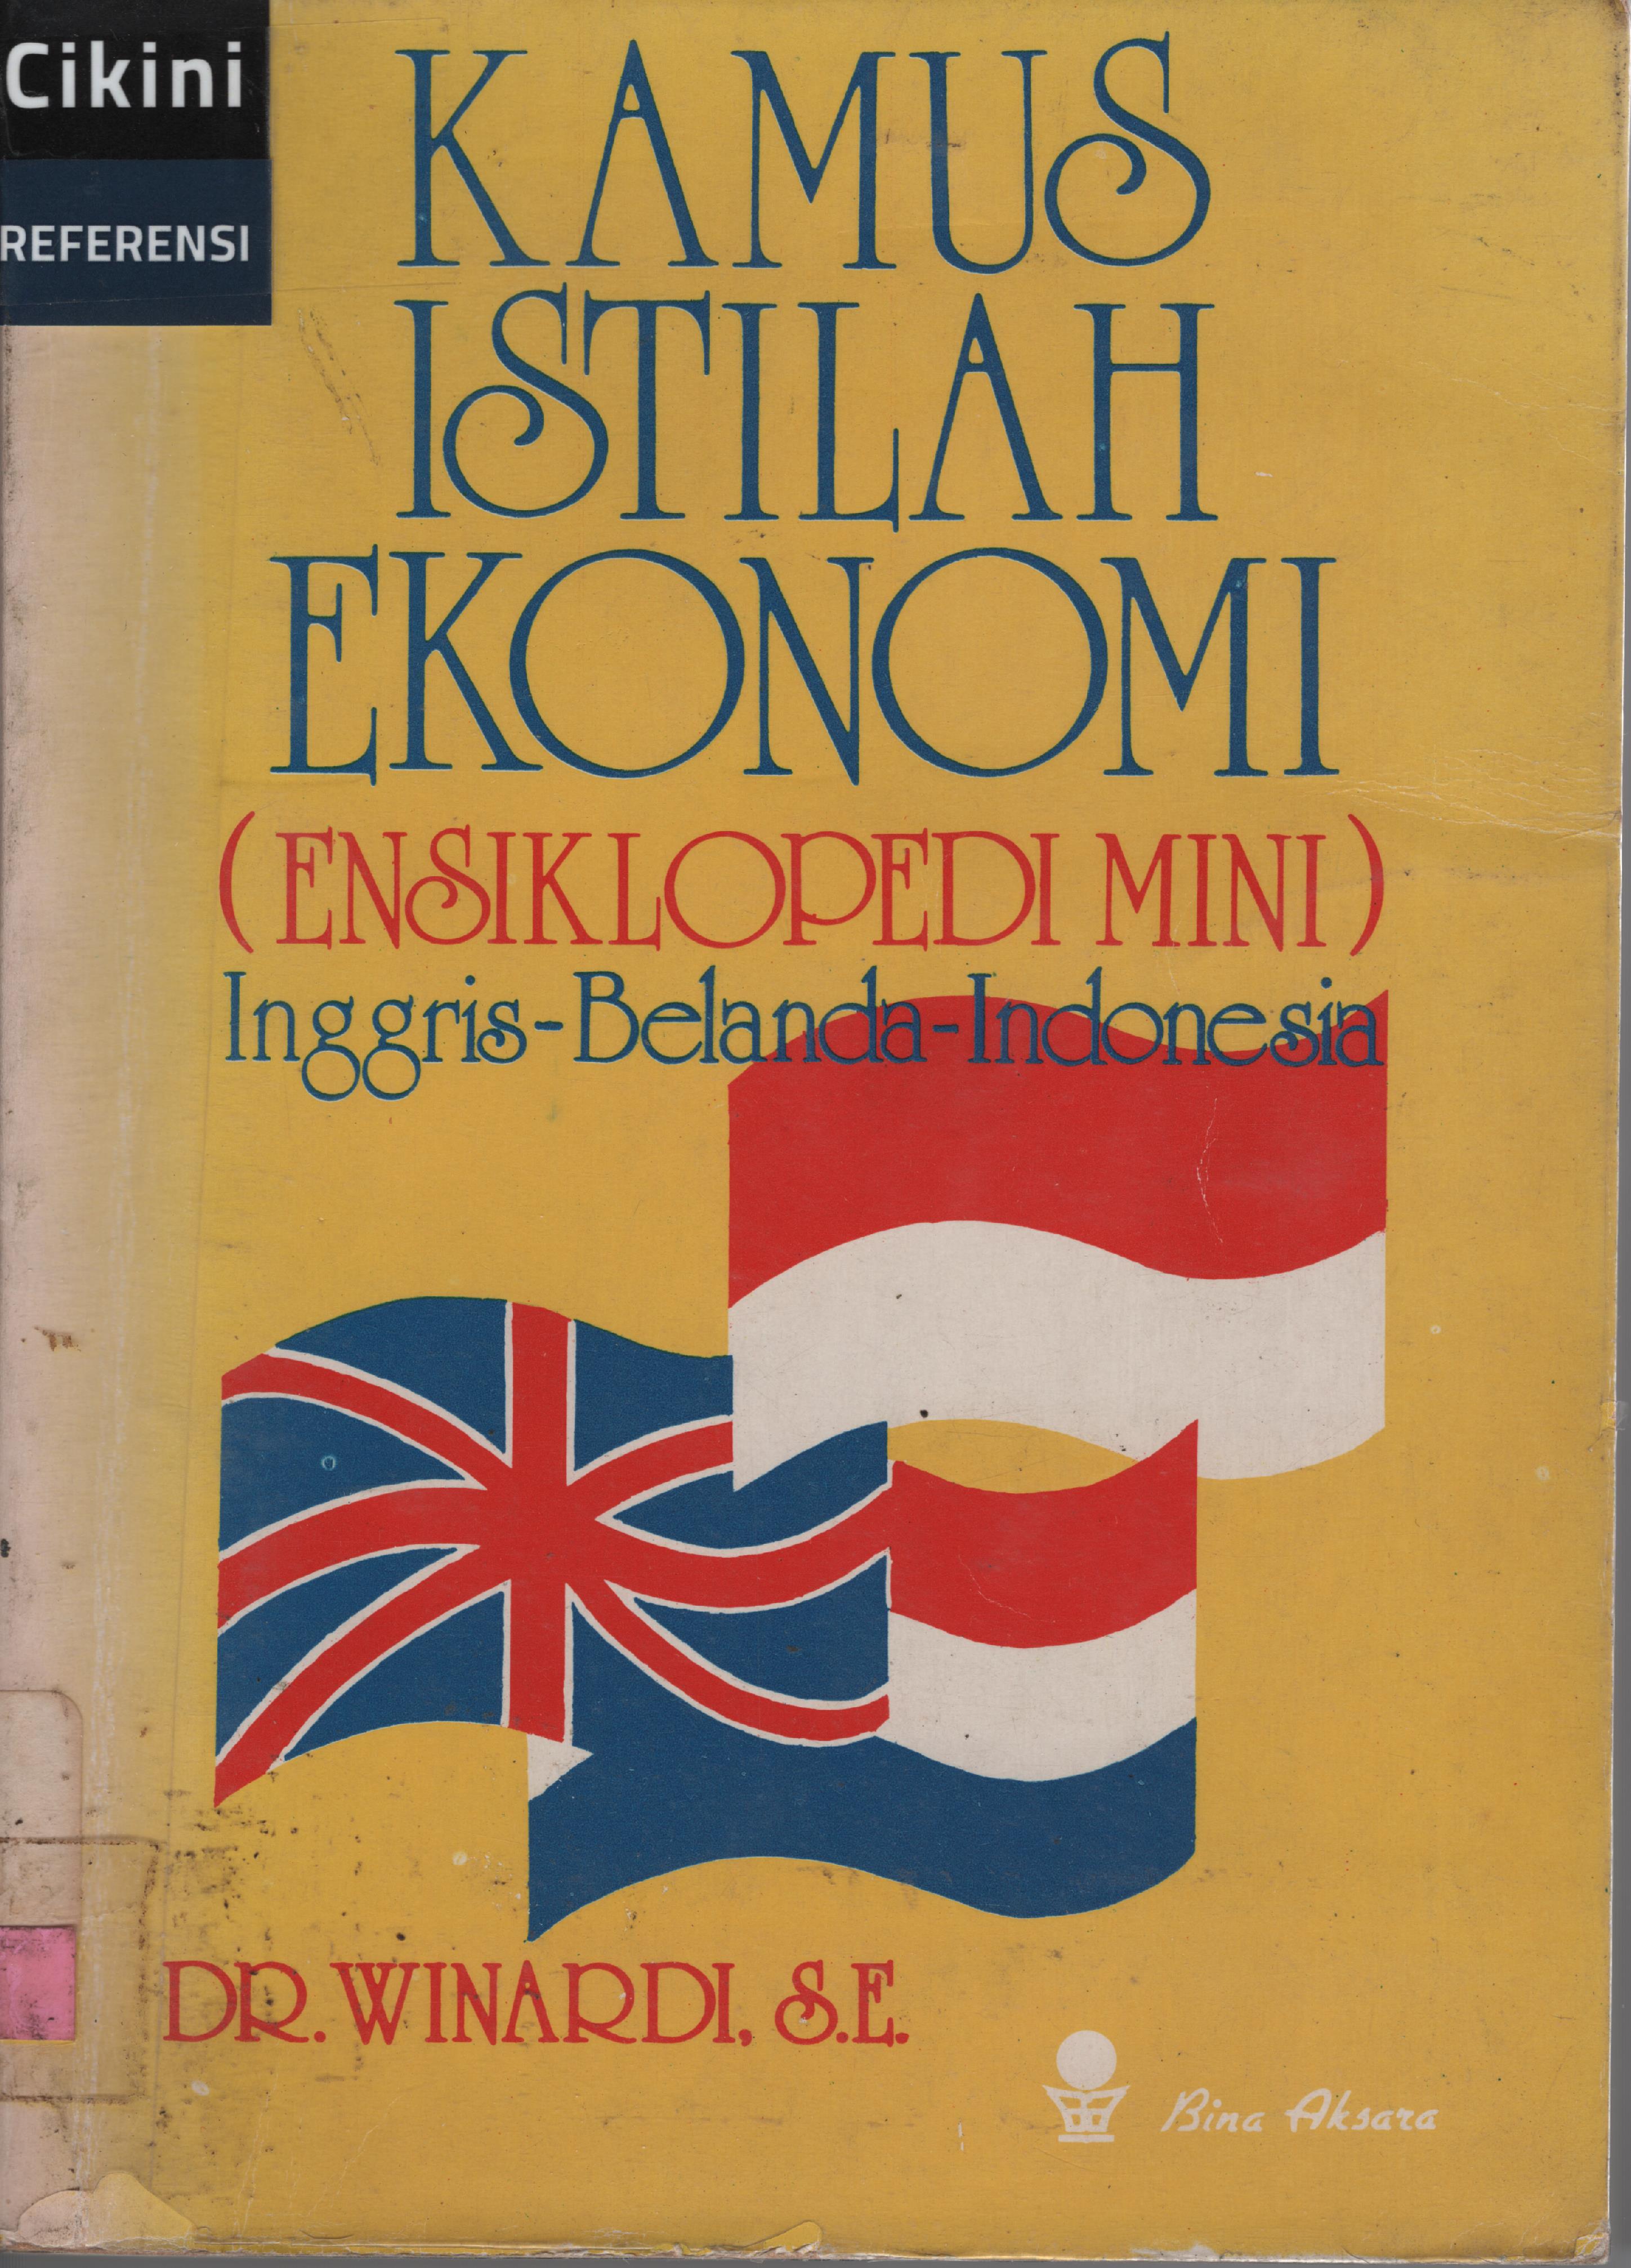 Kamus istilah ekonomi (ensiklopedi mini) :  Inggris - Belanda - Indonesia